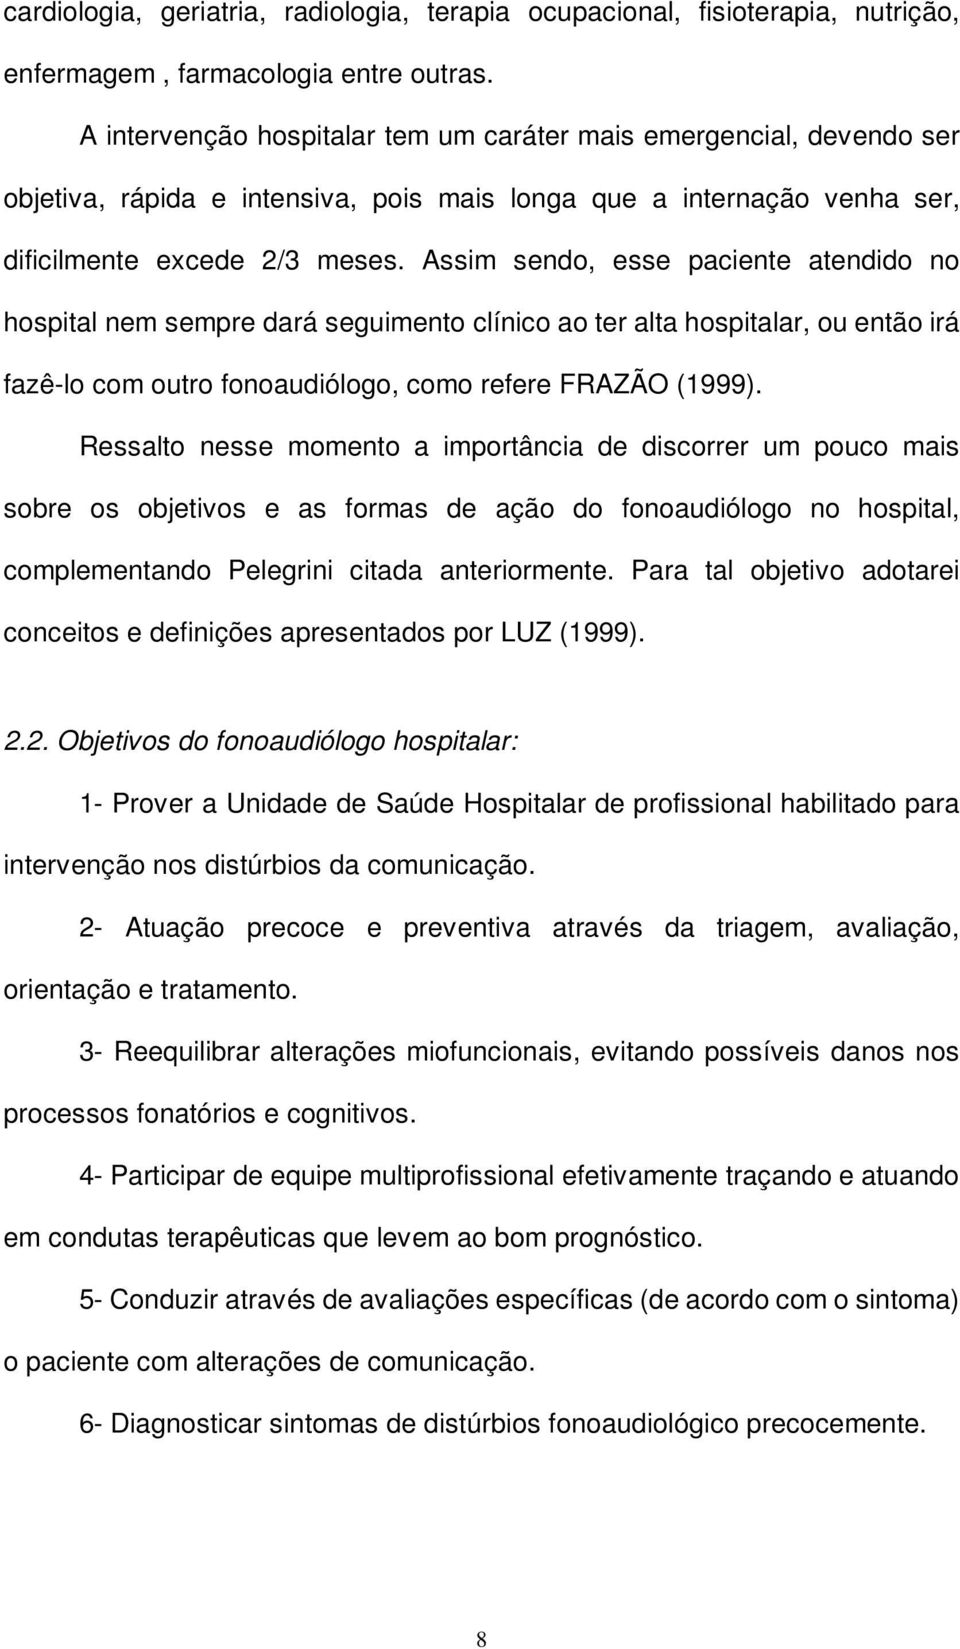 Assim sendo, esse paciente atendido no hospital nem sempre dará seguimento clínico ao ter alta hospitalar, ou então irá fazê-lo com outro fonoaudiólogo, como refere FRAZÃO (1999).